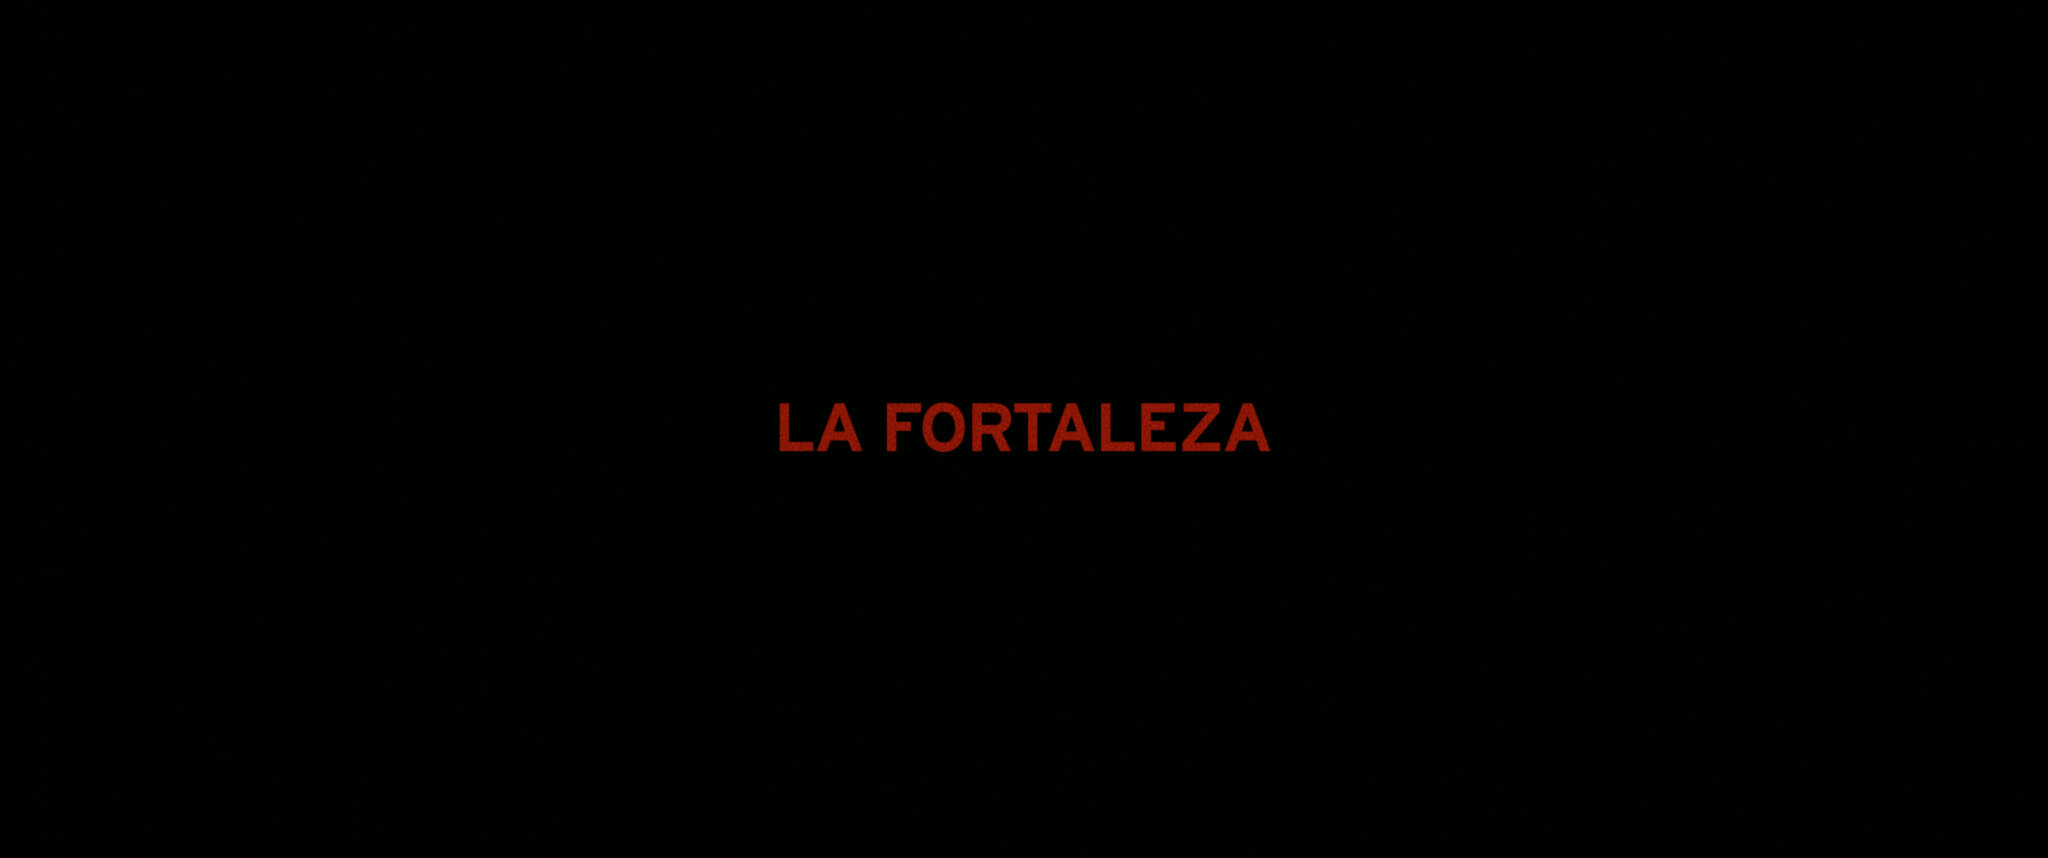 La Fortaleza1.jpg